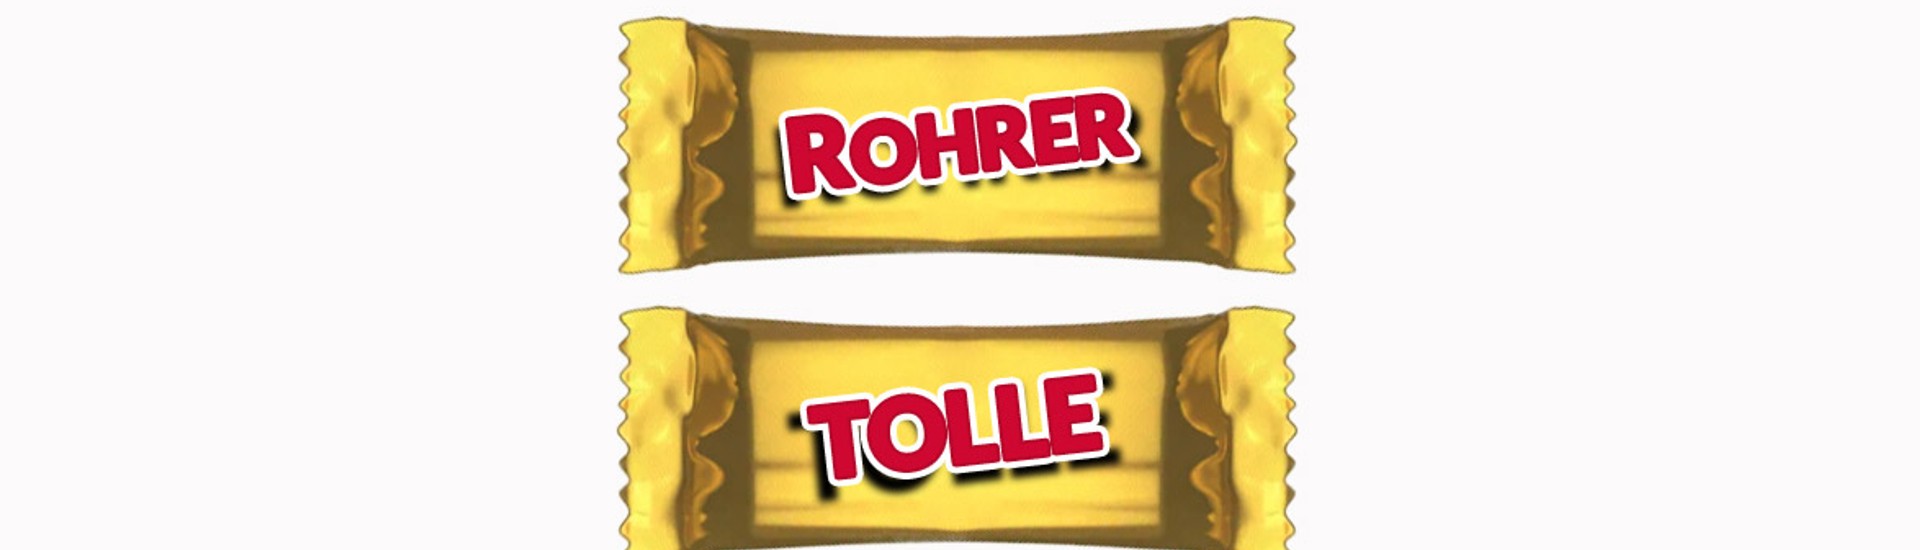 rohrer-tolle-raider-twix.jpg